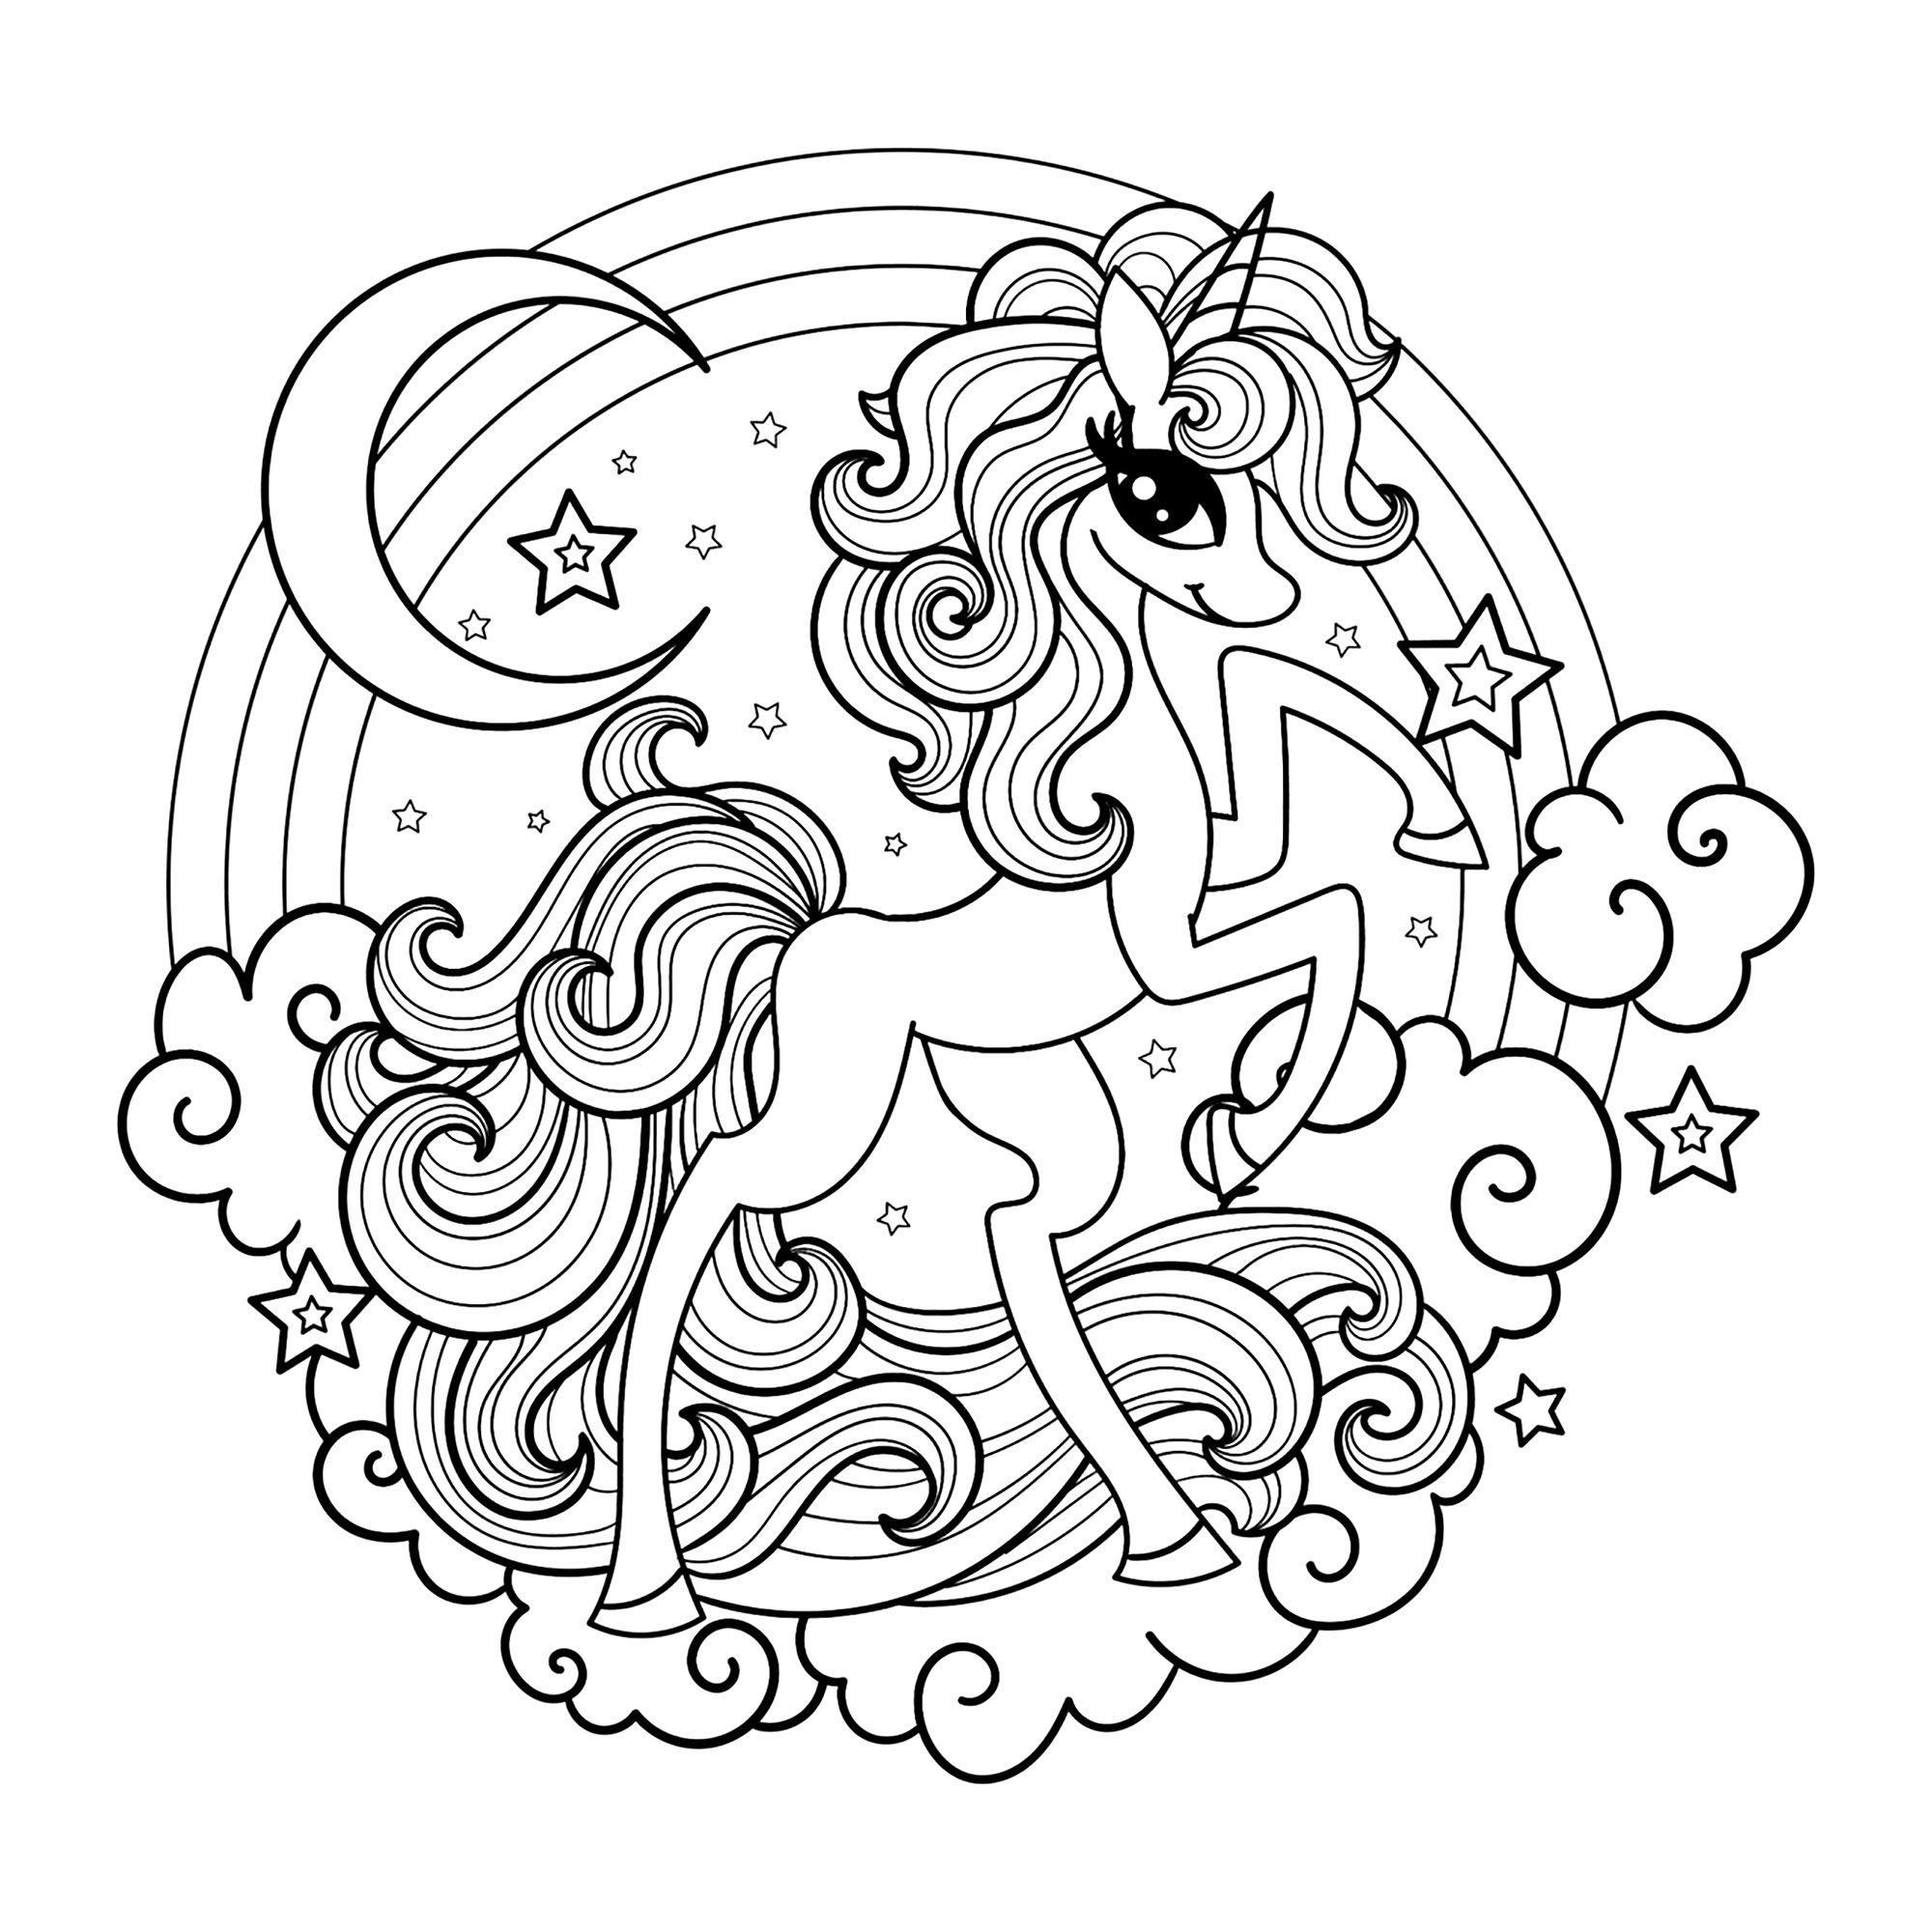 Une licorne très stylée et moderne. Coloriez cette jolie licorne ainsi que l'arc-en-ciel derrière elle, ainsi que la lune, les nuages et les étoiles qui l'entourent, Source : 123rf   Artiste : Zerlina